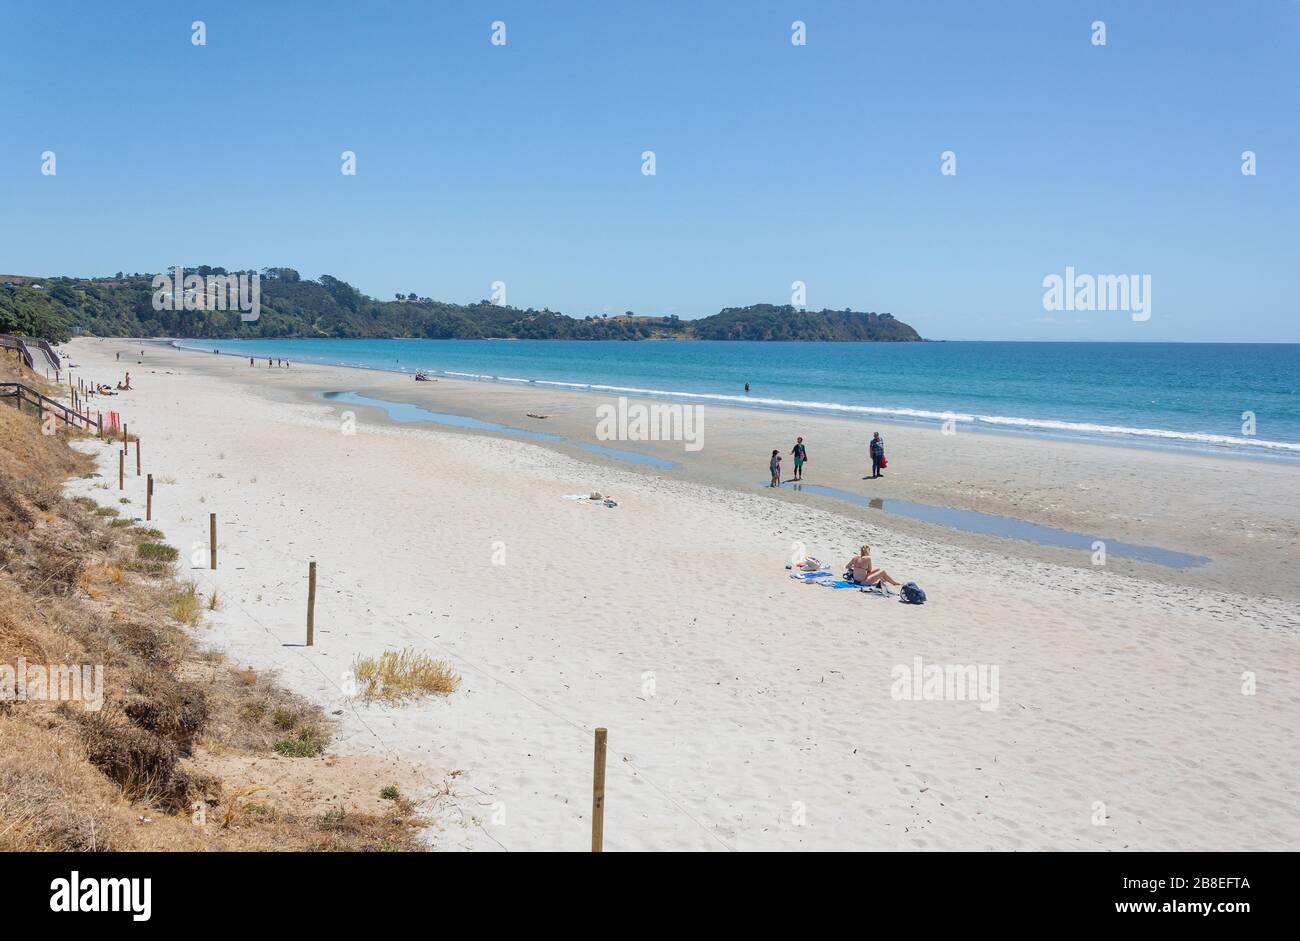 Onetangi Beach, Onetangi Bay, Waiheke Island, Hauraki Gulf, Auckland, New Zealand Stock Photo